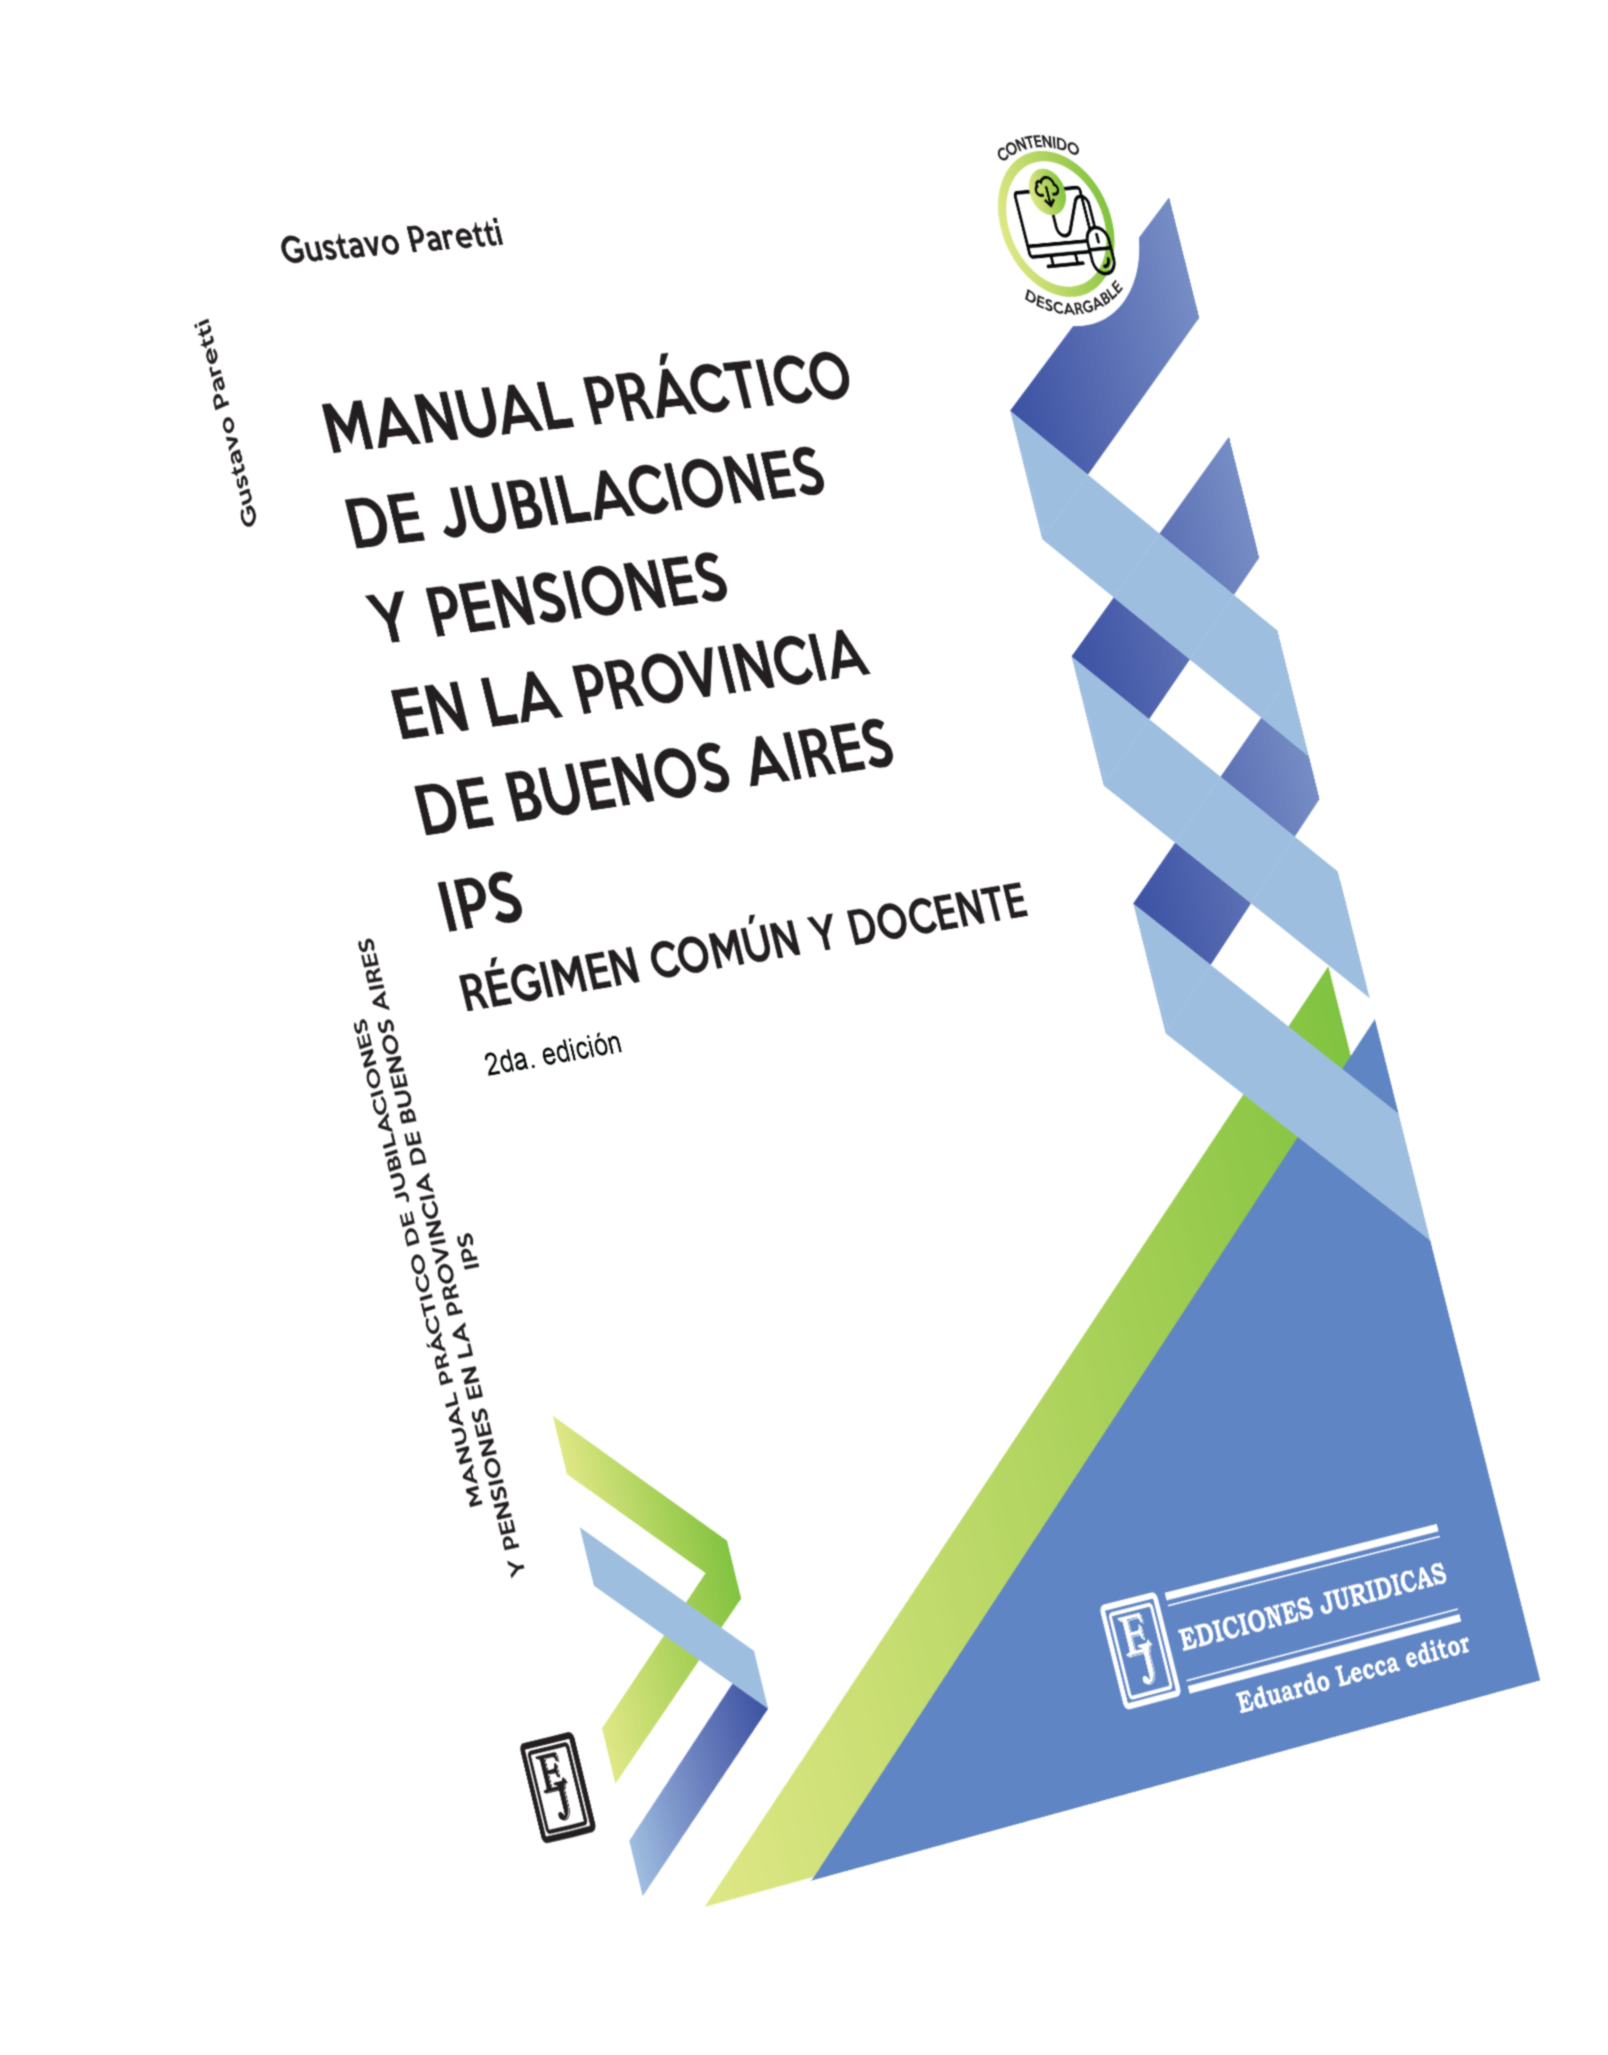 Manual Práctico de Jubilaciones y Pensiones en el Prov. de Bs. As. - IPS - Régimen Común Docente